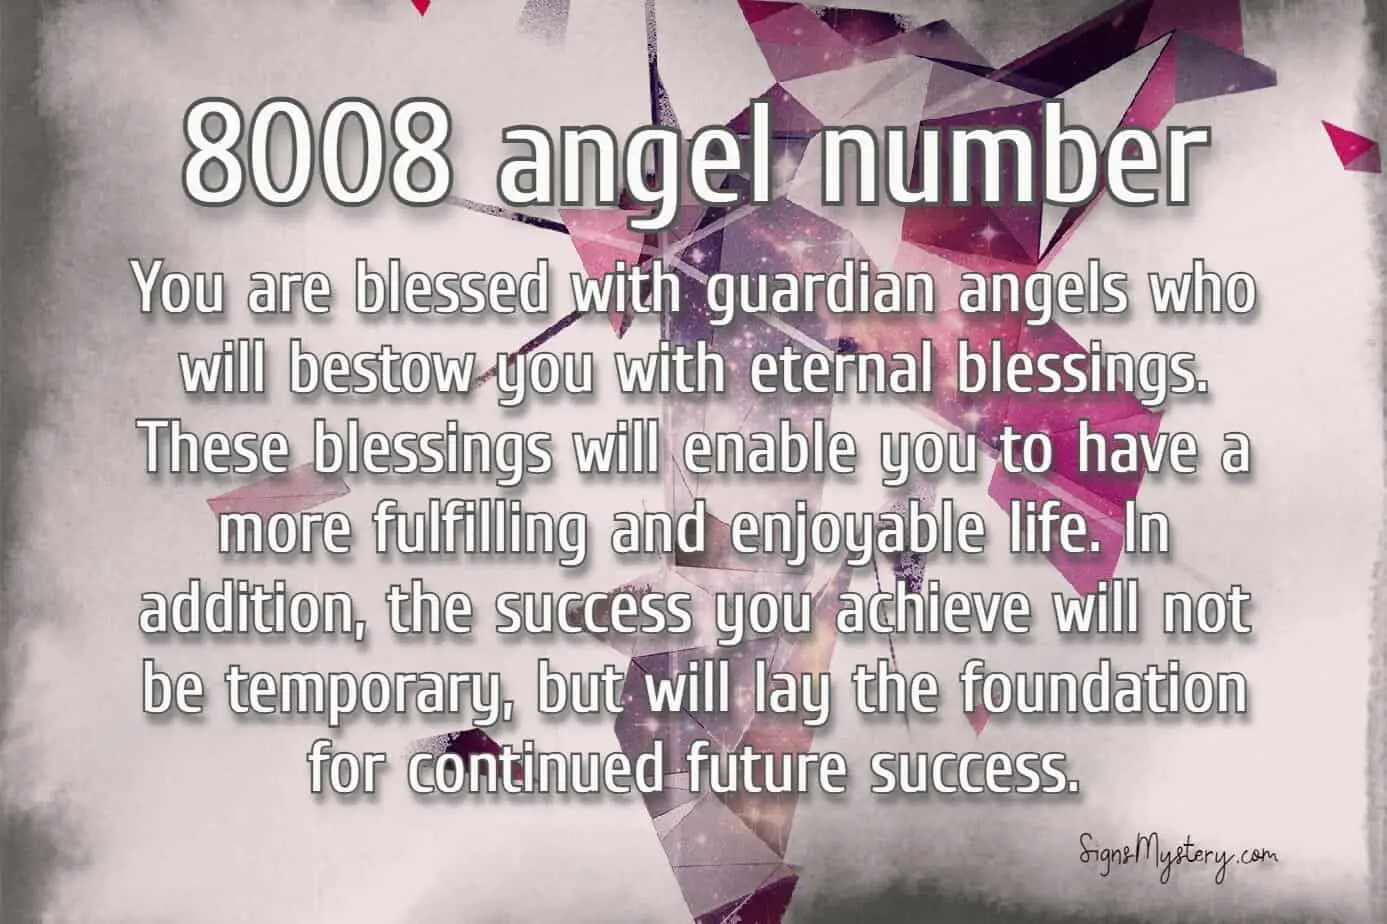 8008 angel number